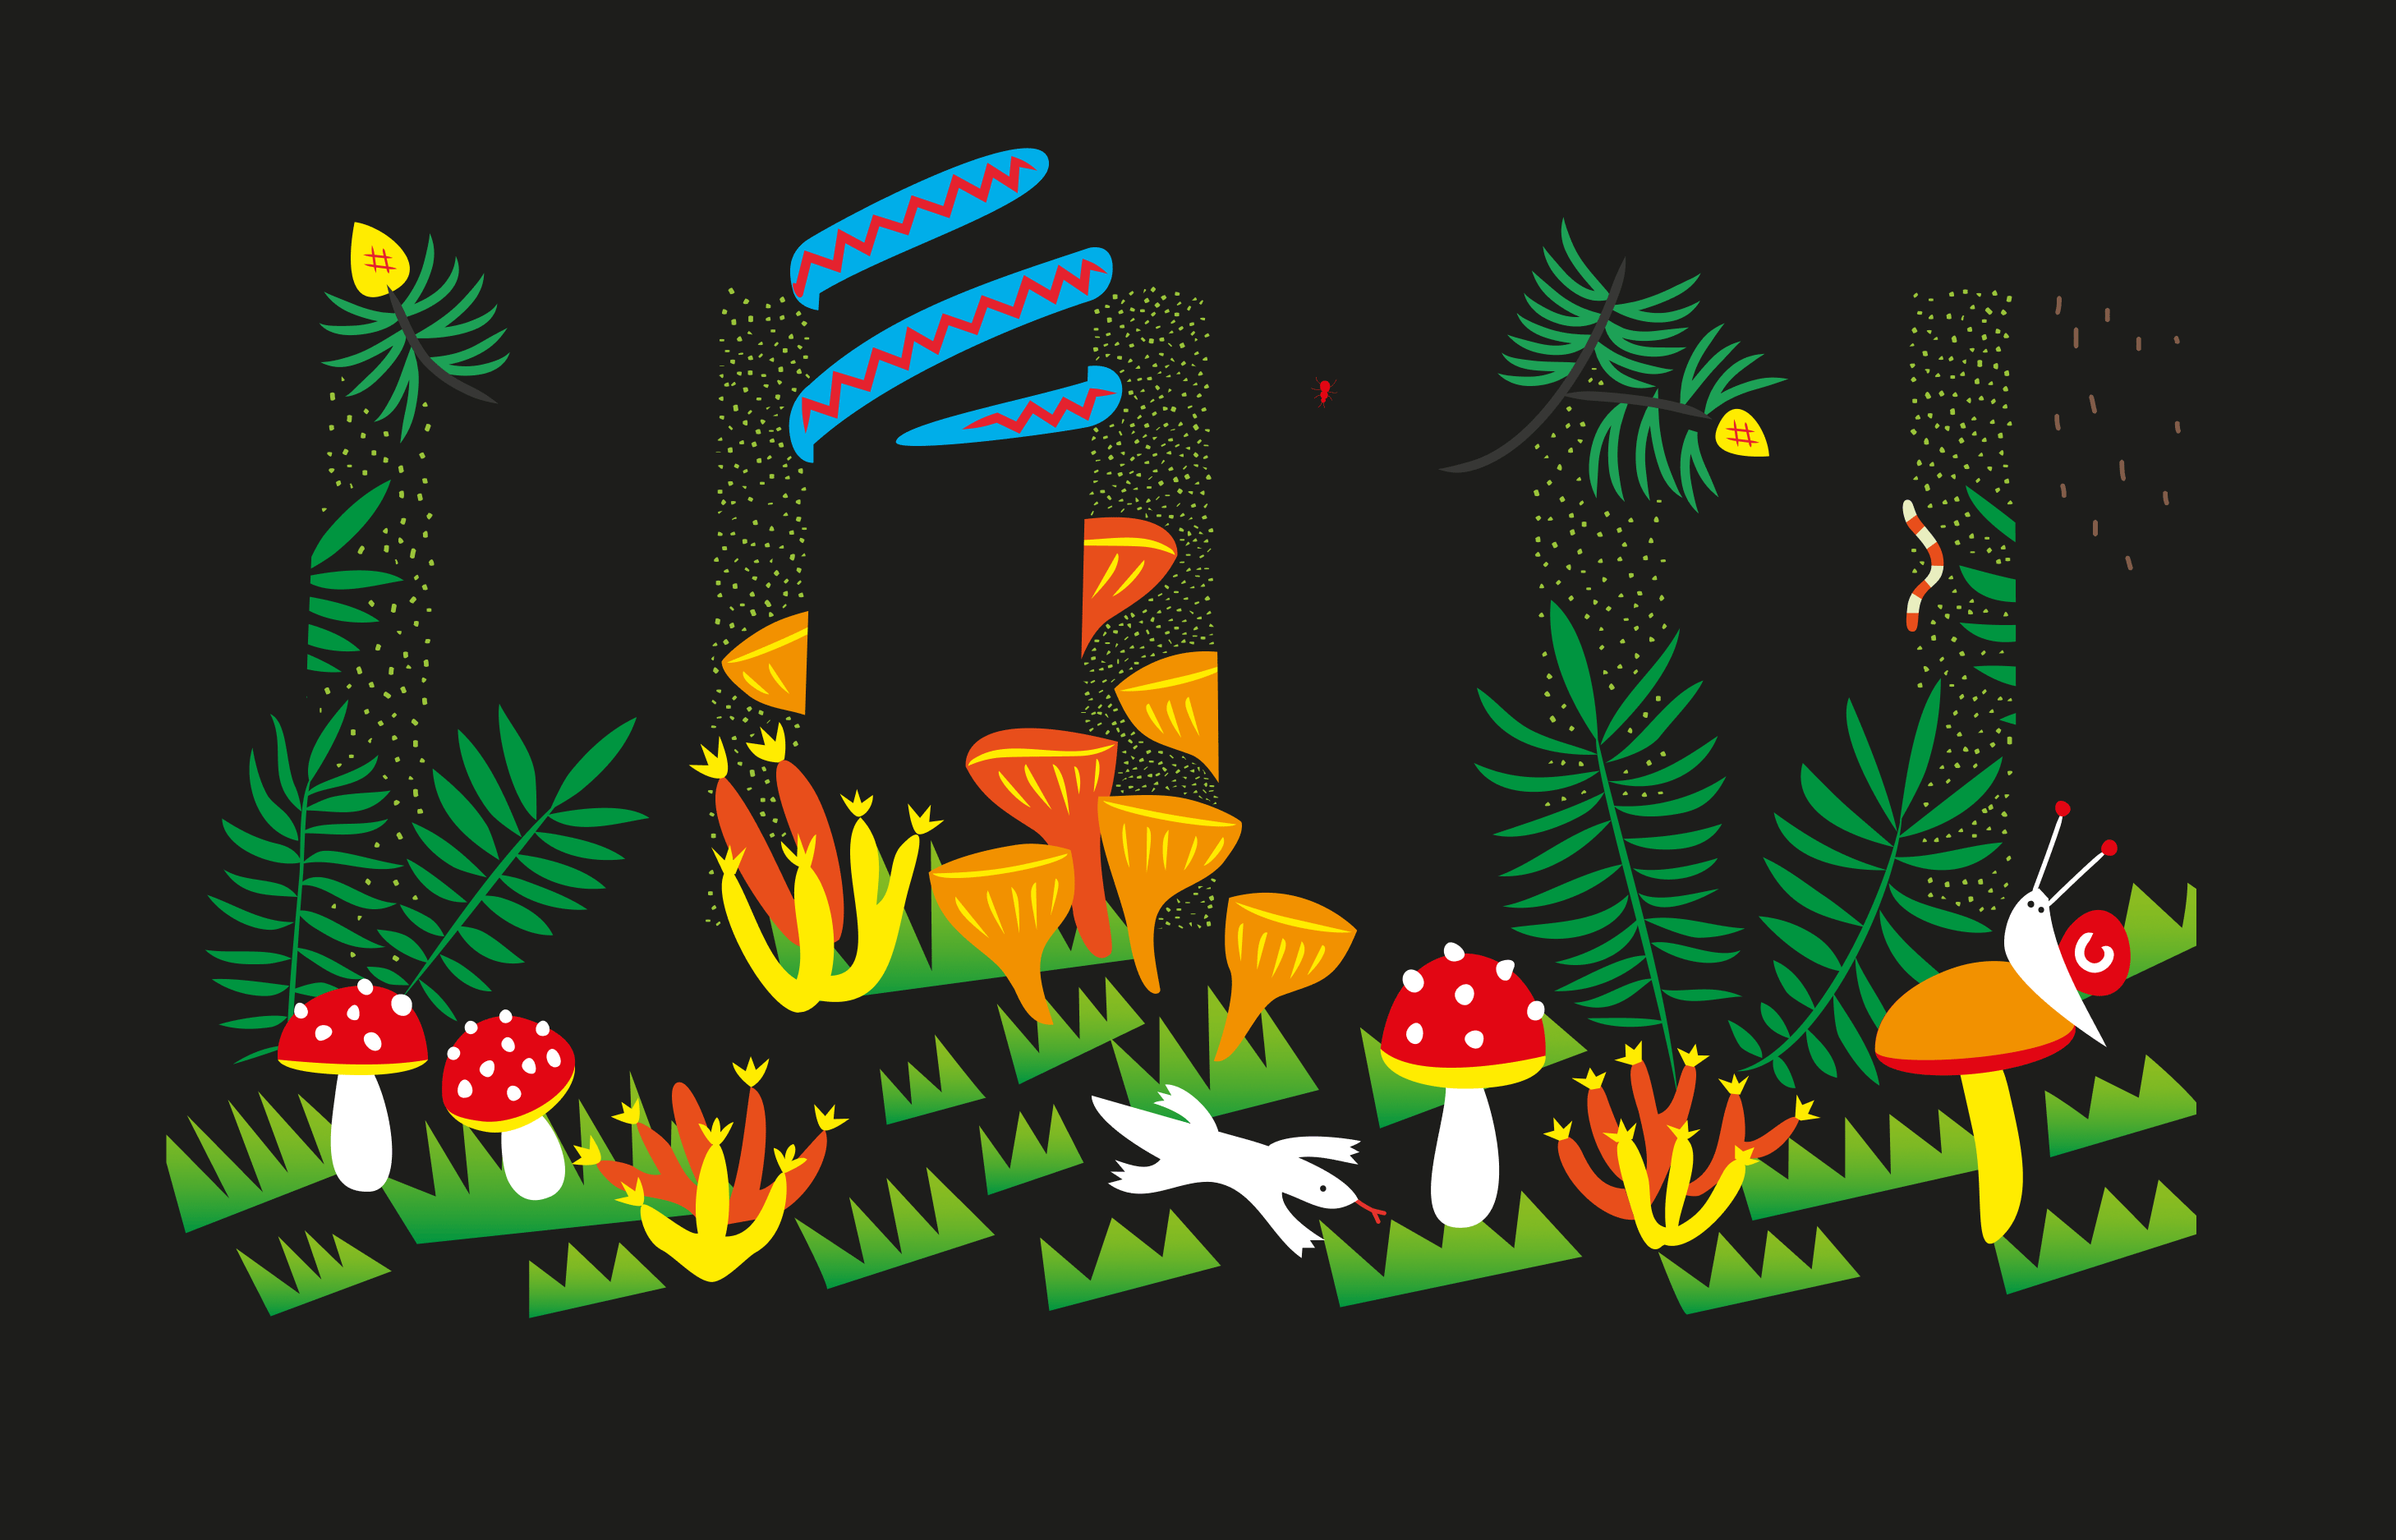 Secret forest life illustration